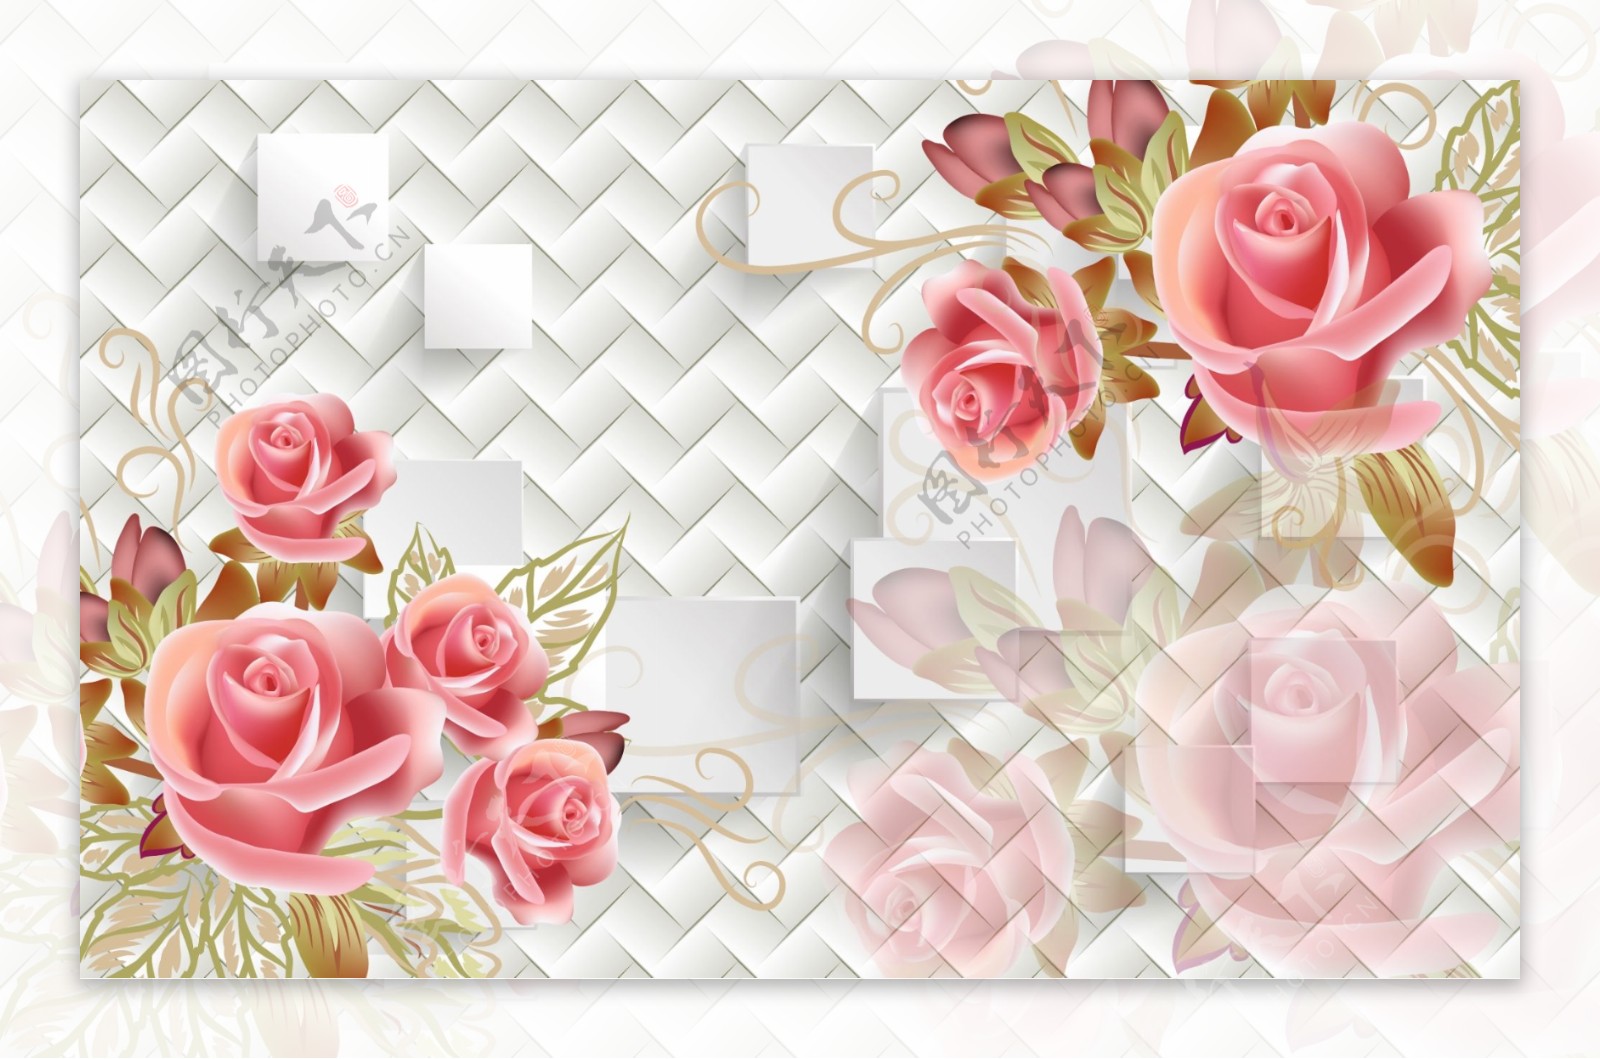 3D方块玫瑰花卉背景墙